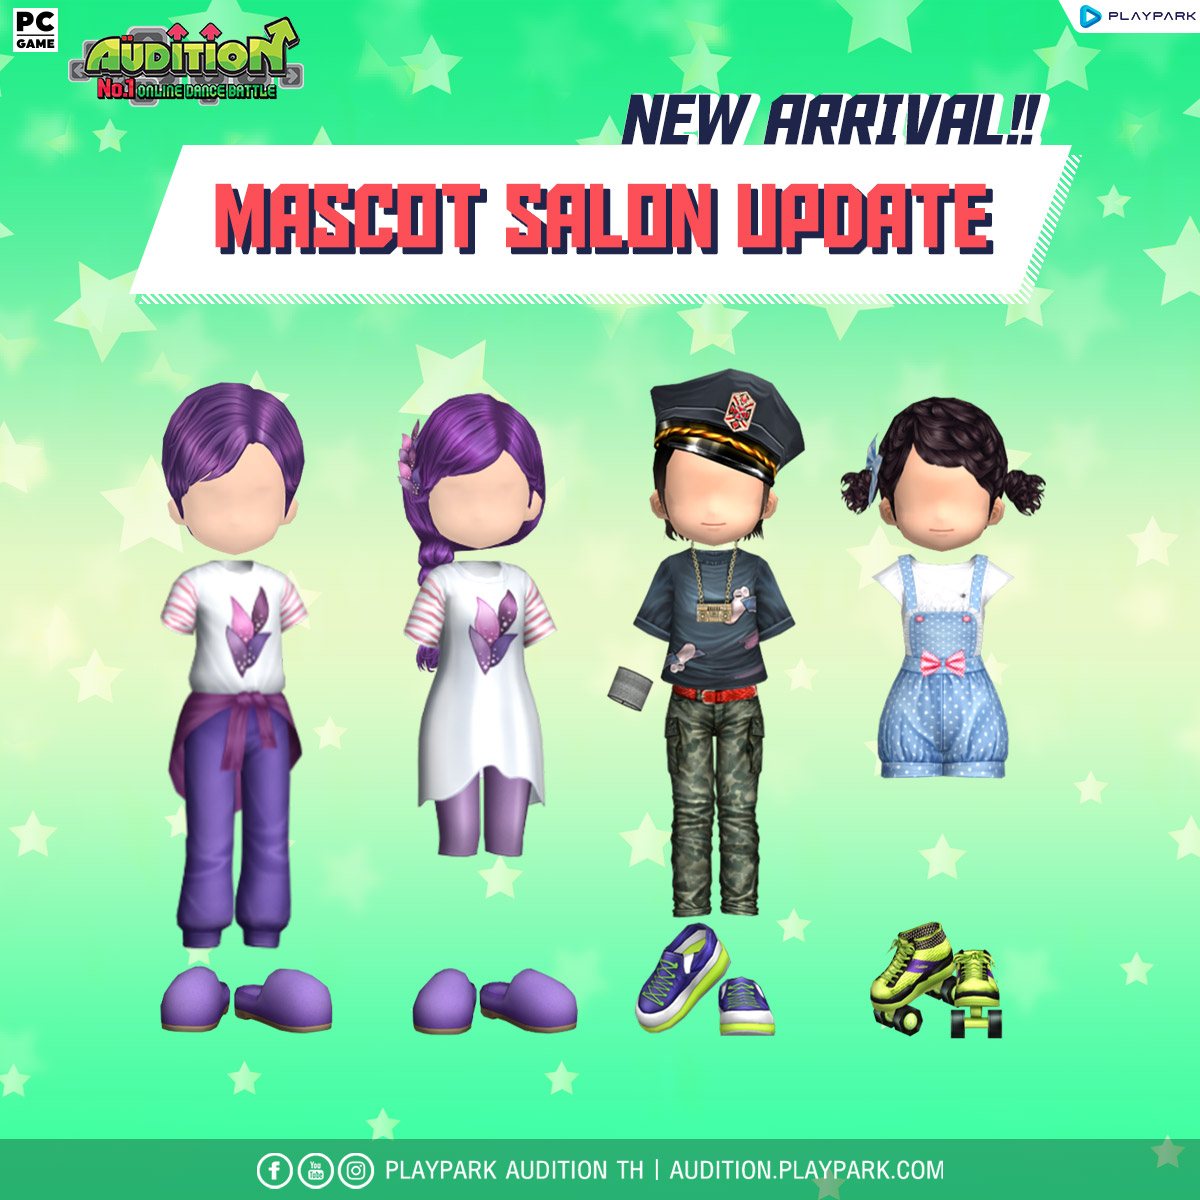 7 มิถุนายนนี้ Update เพลงใหม่, Lucky Game, Mascot Salon และไอเทมใหม่!!  